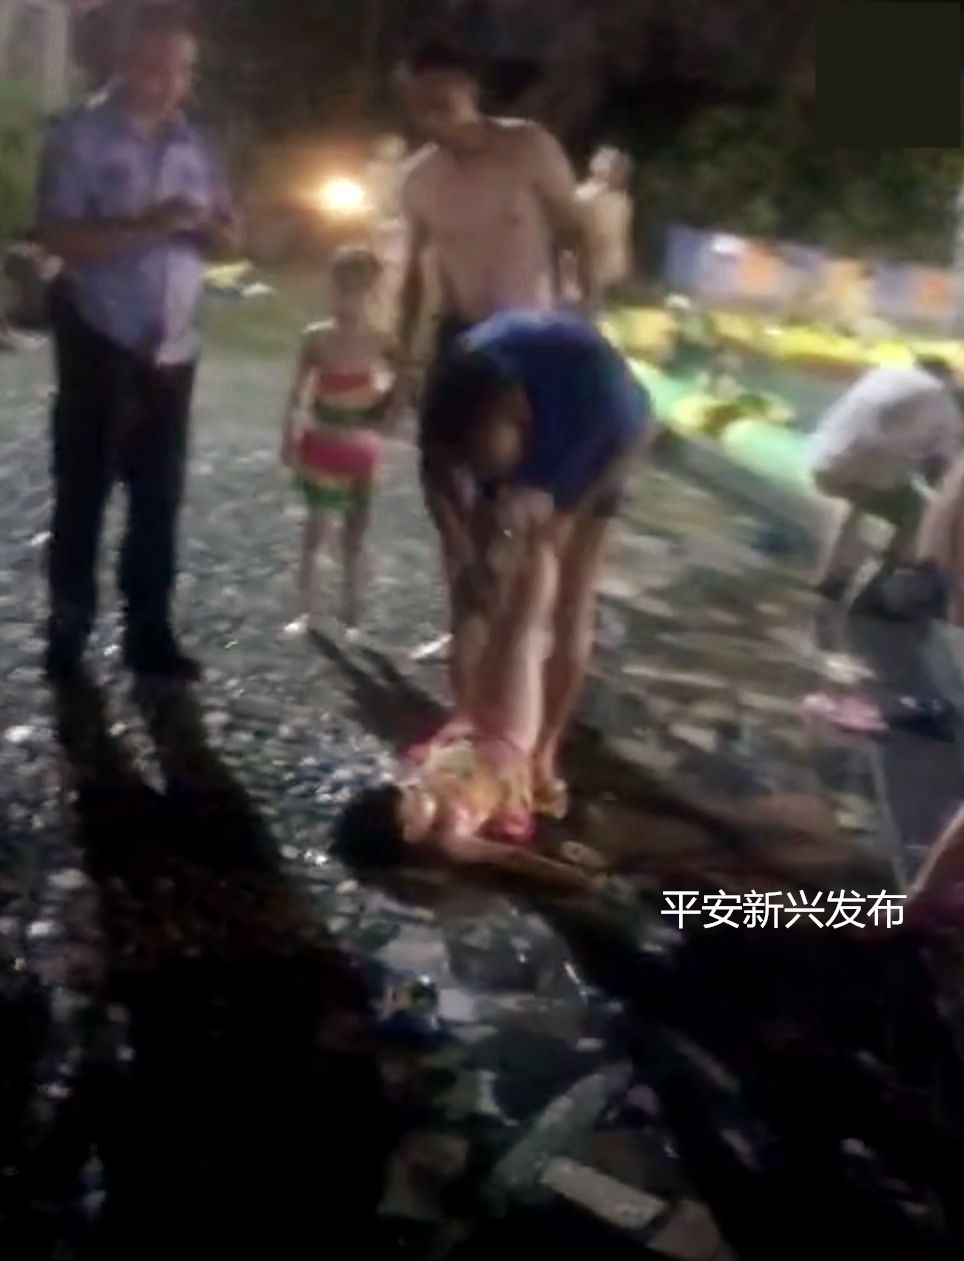 昨晚,县城某游泳中心发生一起小孩溺水事件,睇到心惊惊.